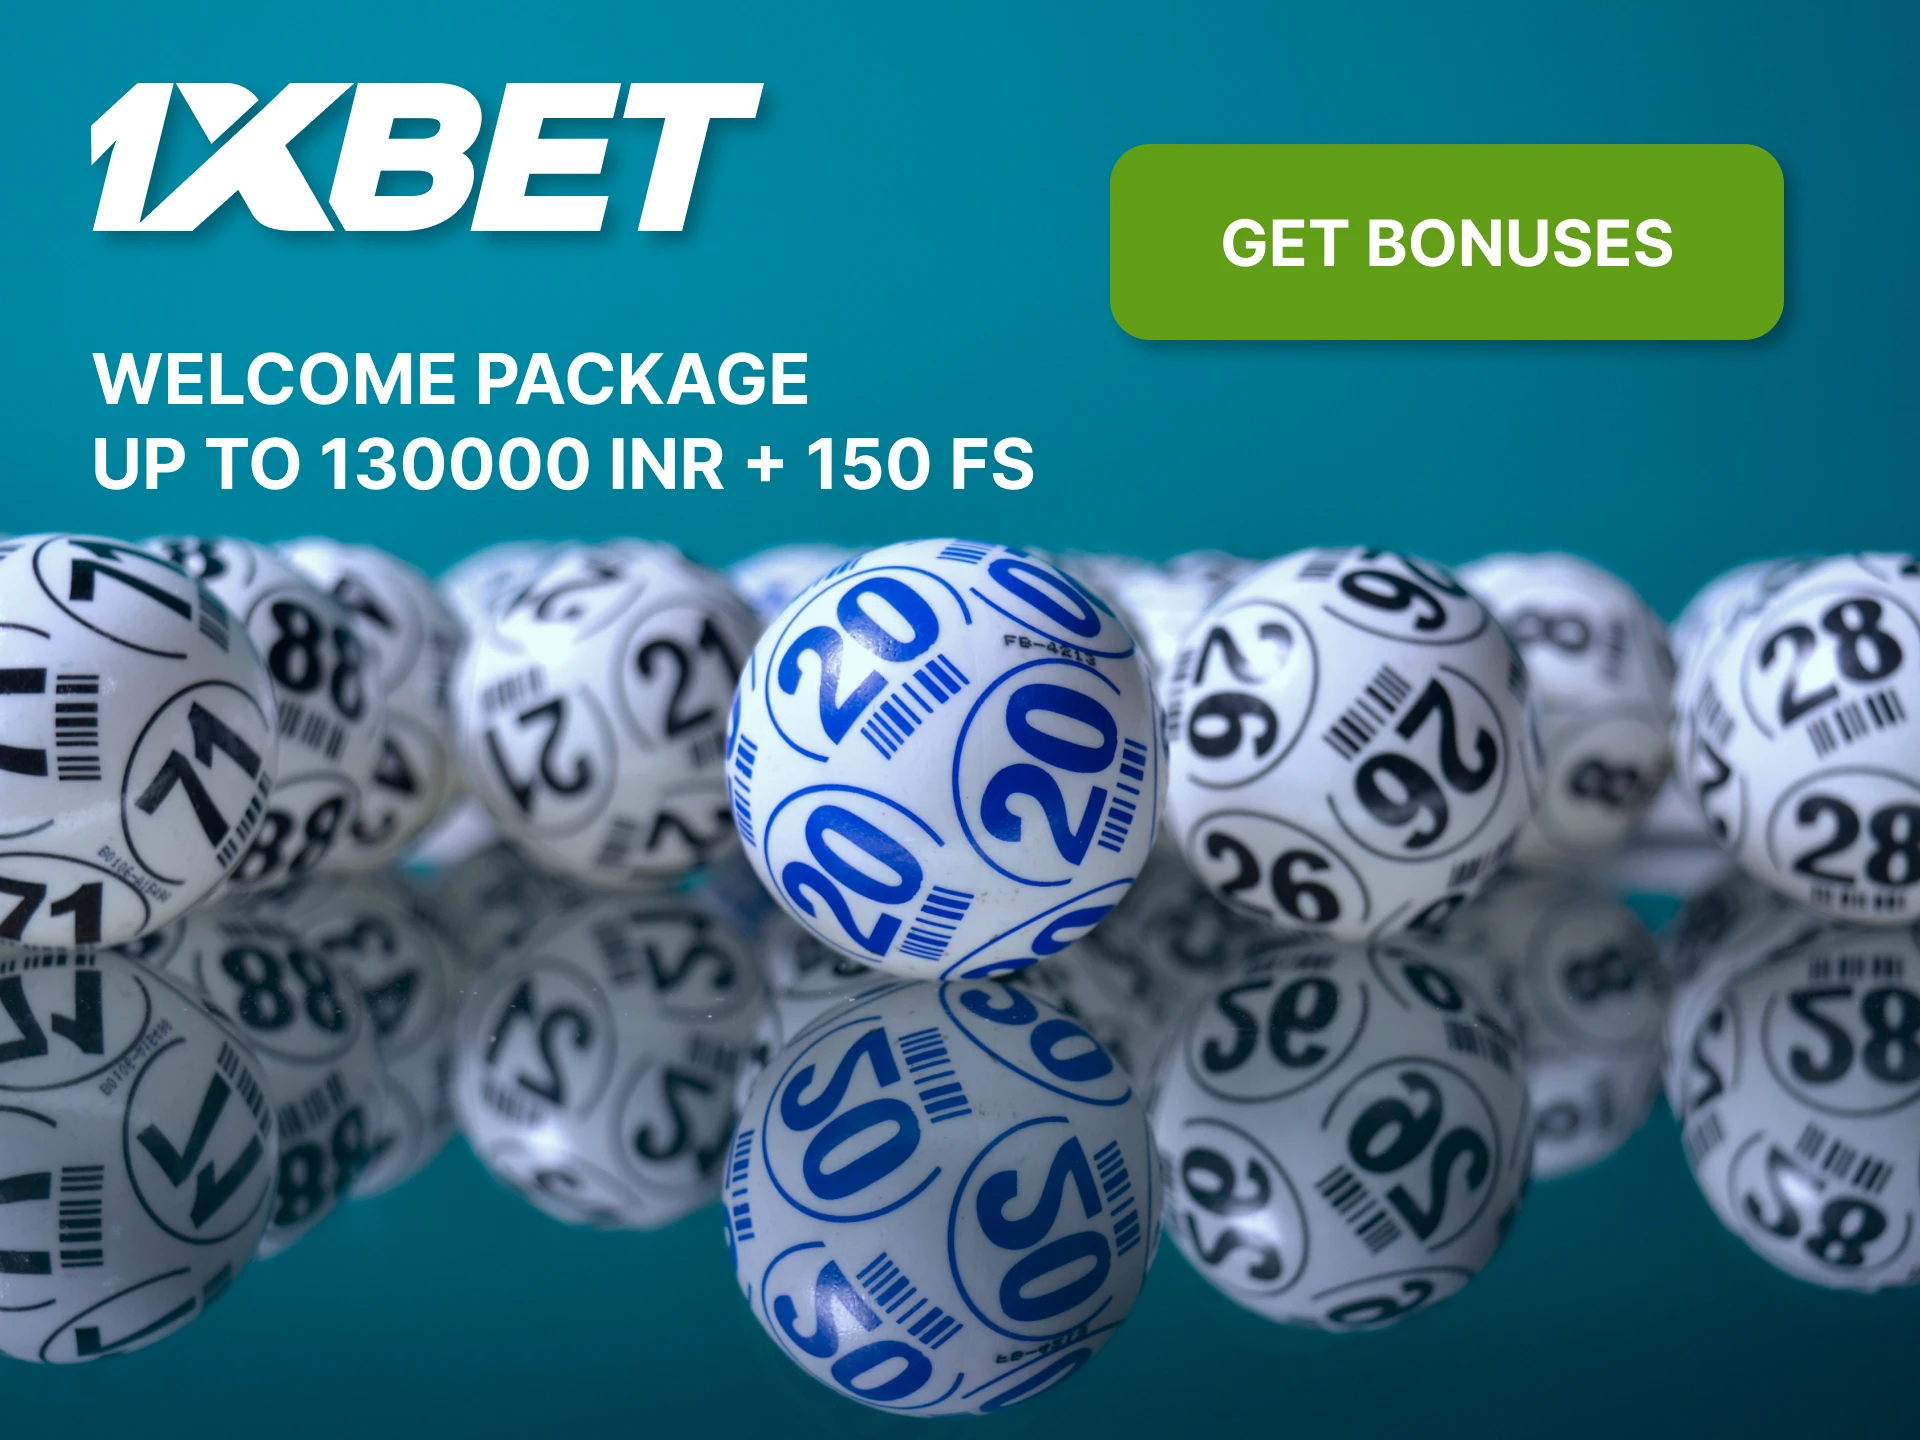 At 1xBet, get your lucrative bingo betting bonus.